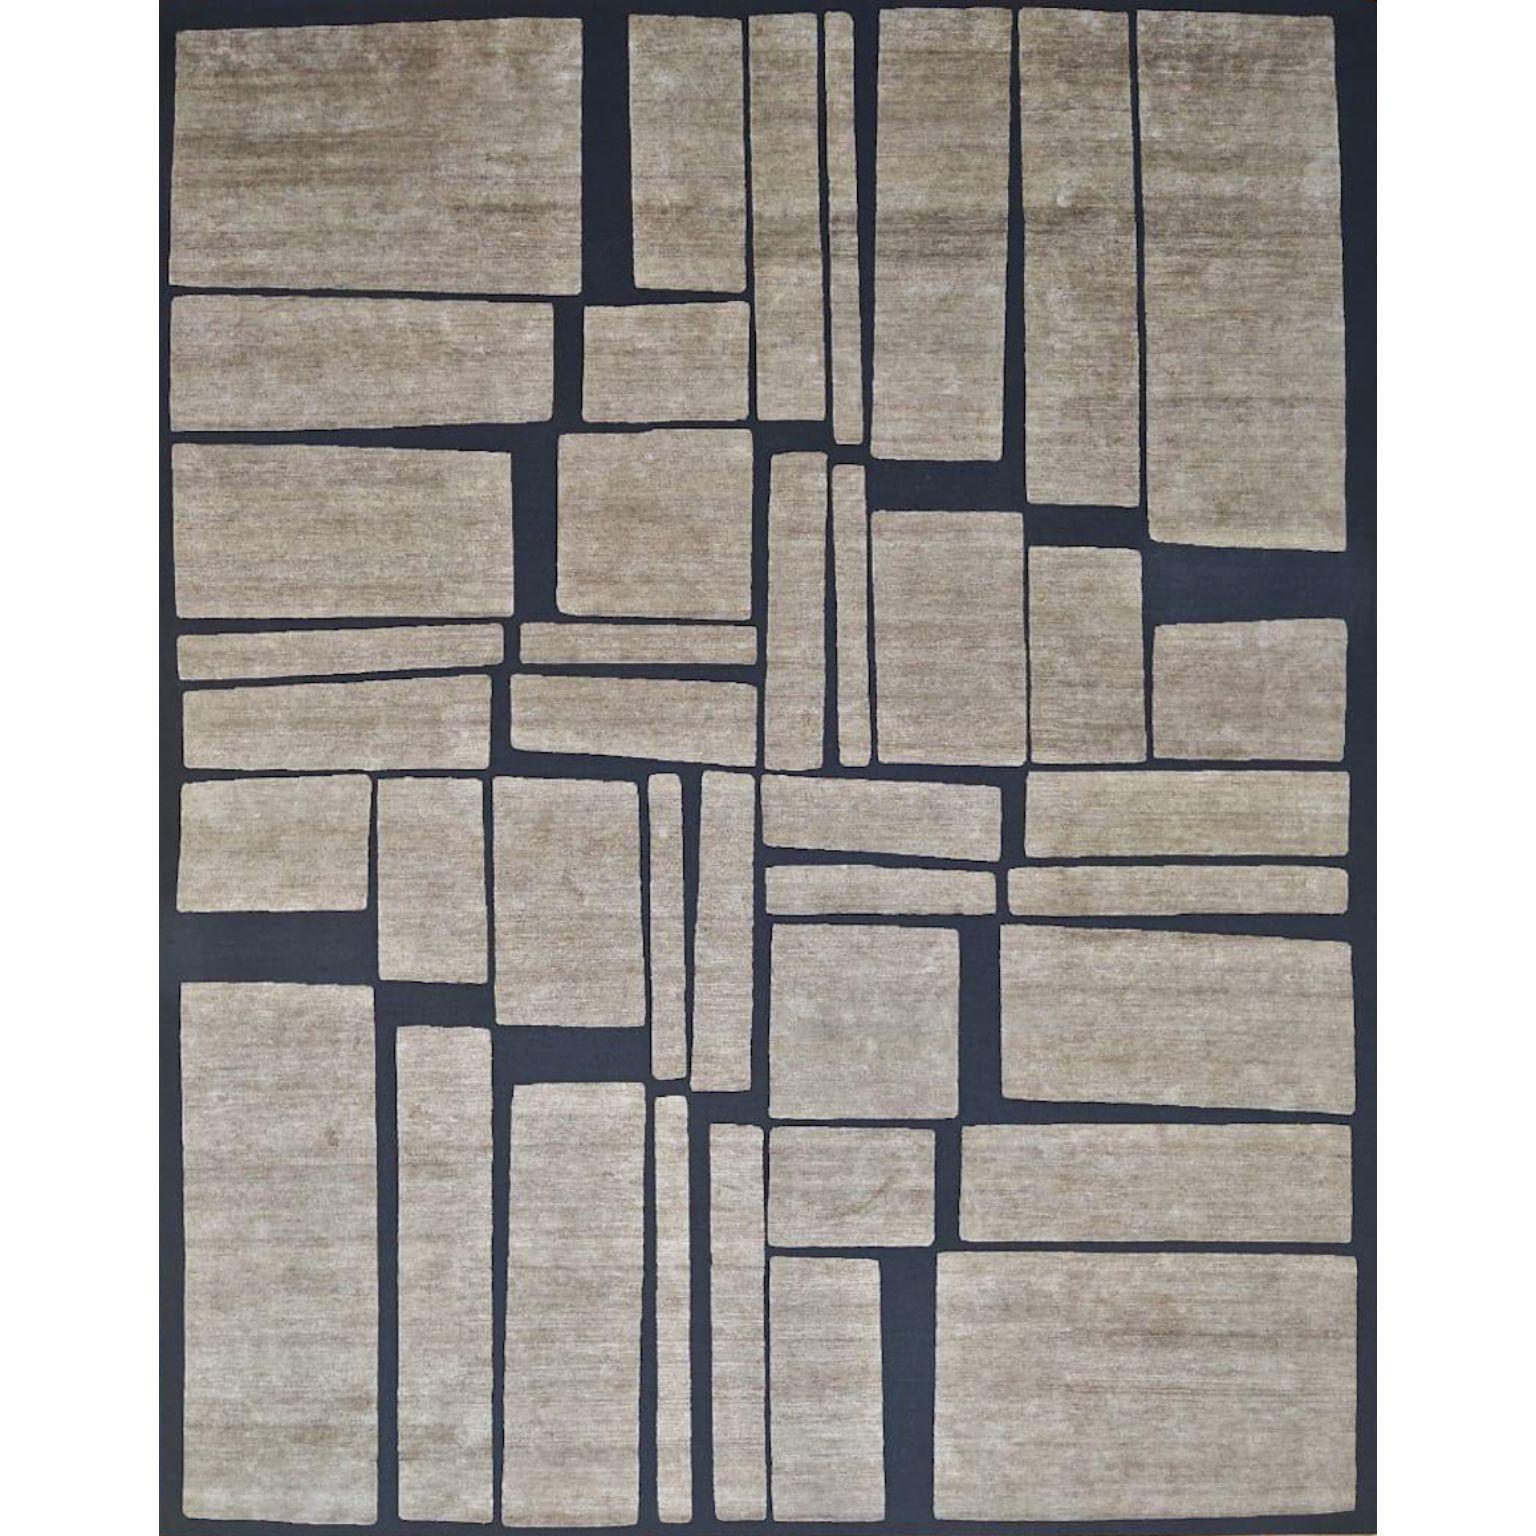 Großer Windowpane-Teppich von Art & Loom
Abmessungen: T304,8 x H426,7 cm
MATERIALIEN: Allo &New Zealand Wolle
Qualität (Äste pro Zoll): 100
Auch in anderen Abmessungen erhältlich.

Samantha Gallacher hatte schon immer einen scharfen Blick für